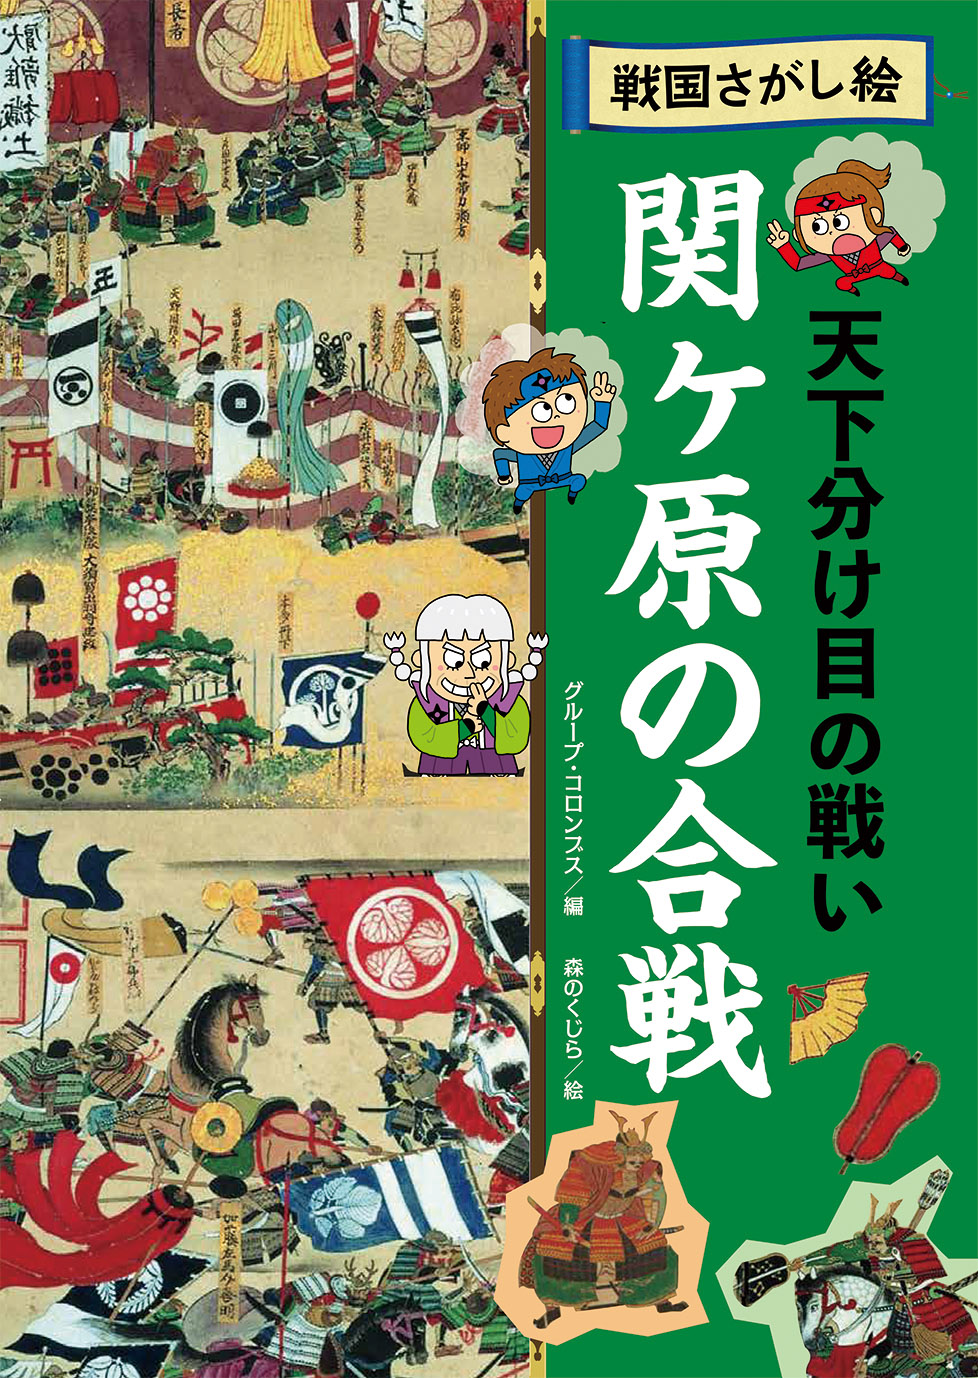 関ヶ原の合戦の商品画像